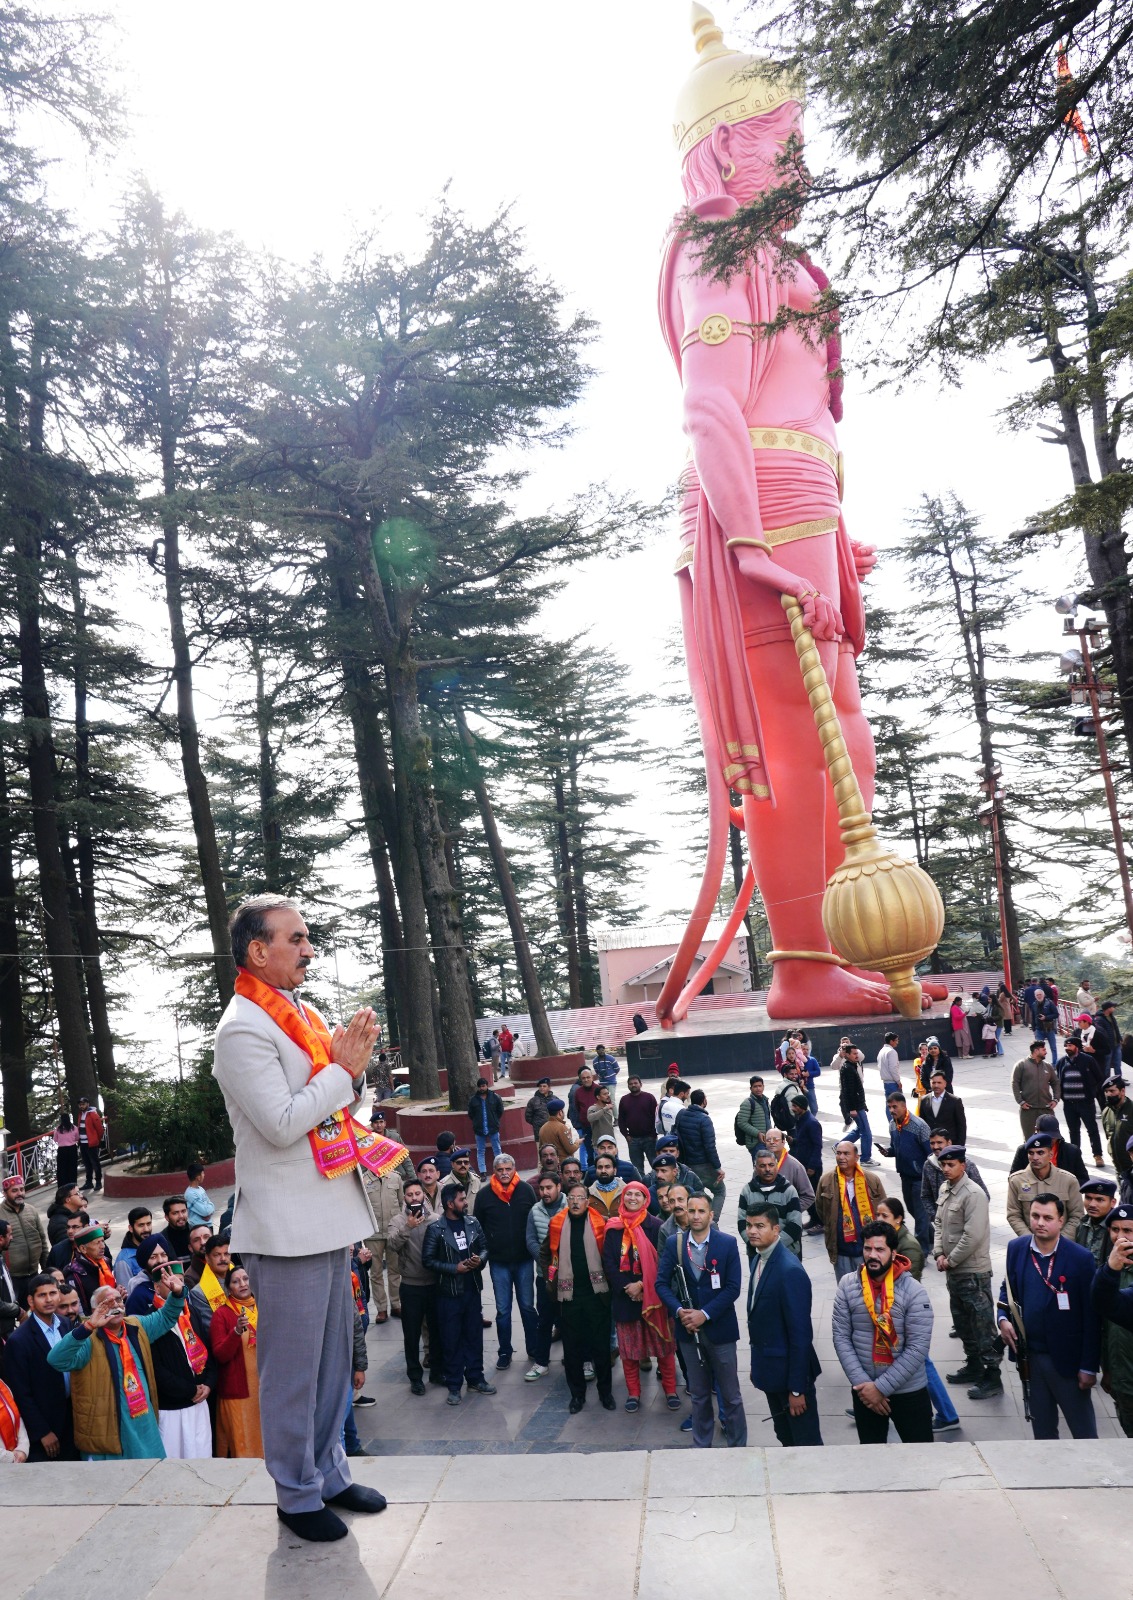 राम के बिना हनुमान जी अधूरे हैं जाखू में लगेगी राम की मूर्ति :मुख्यमंत्री सुखविंदर सिंह सुक्खू